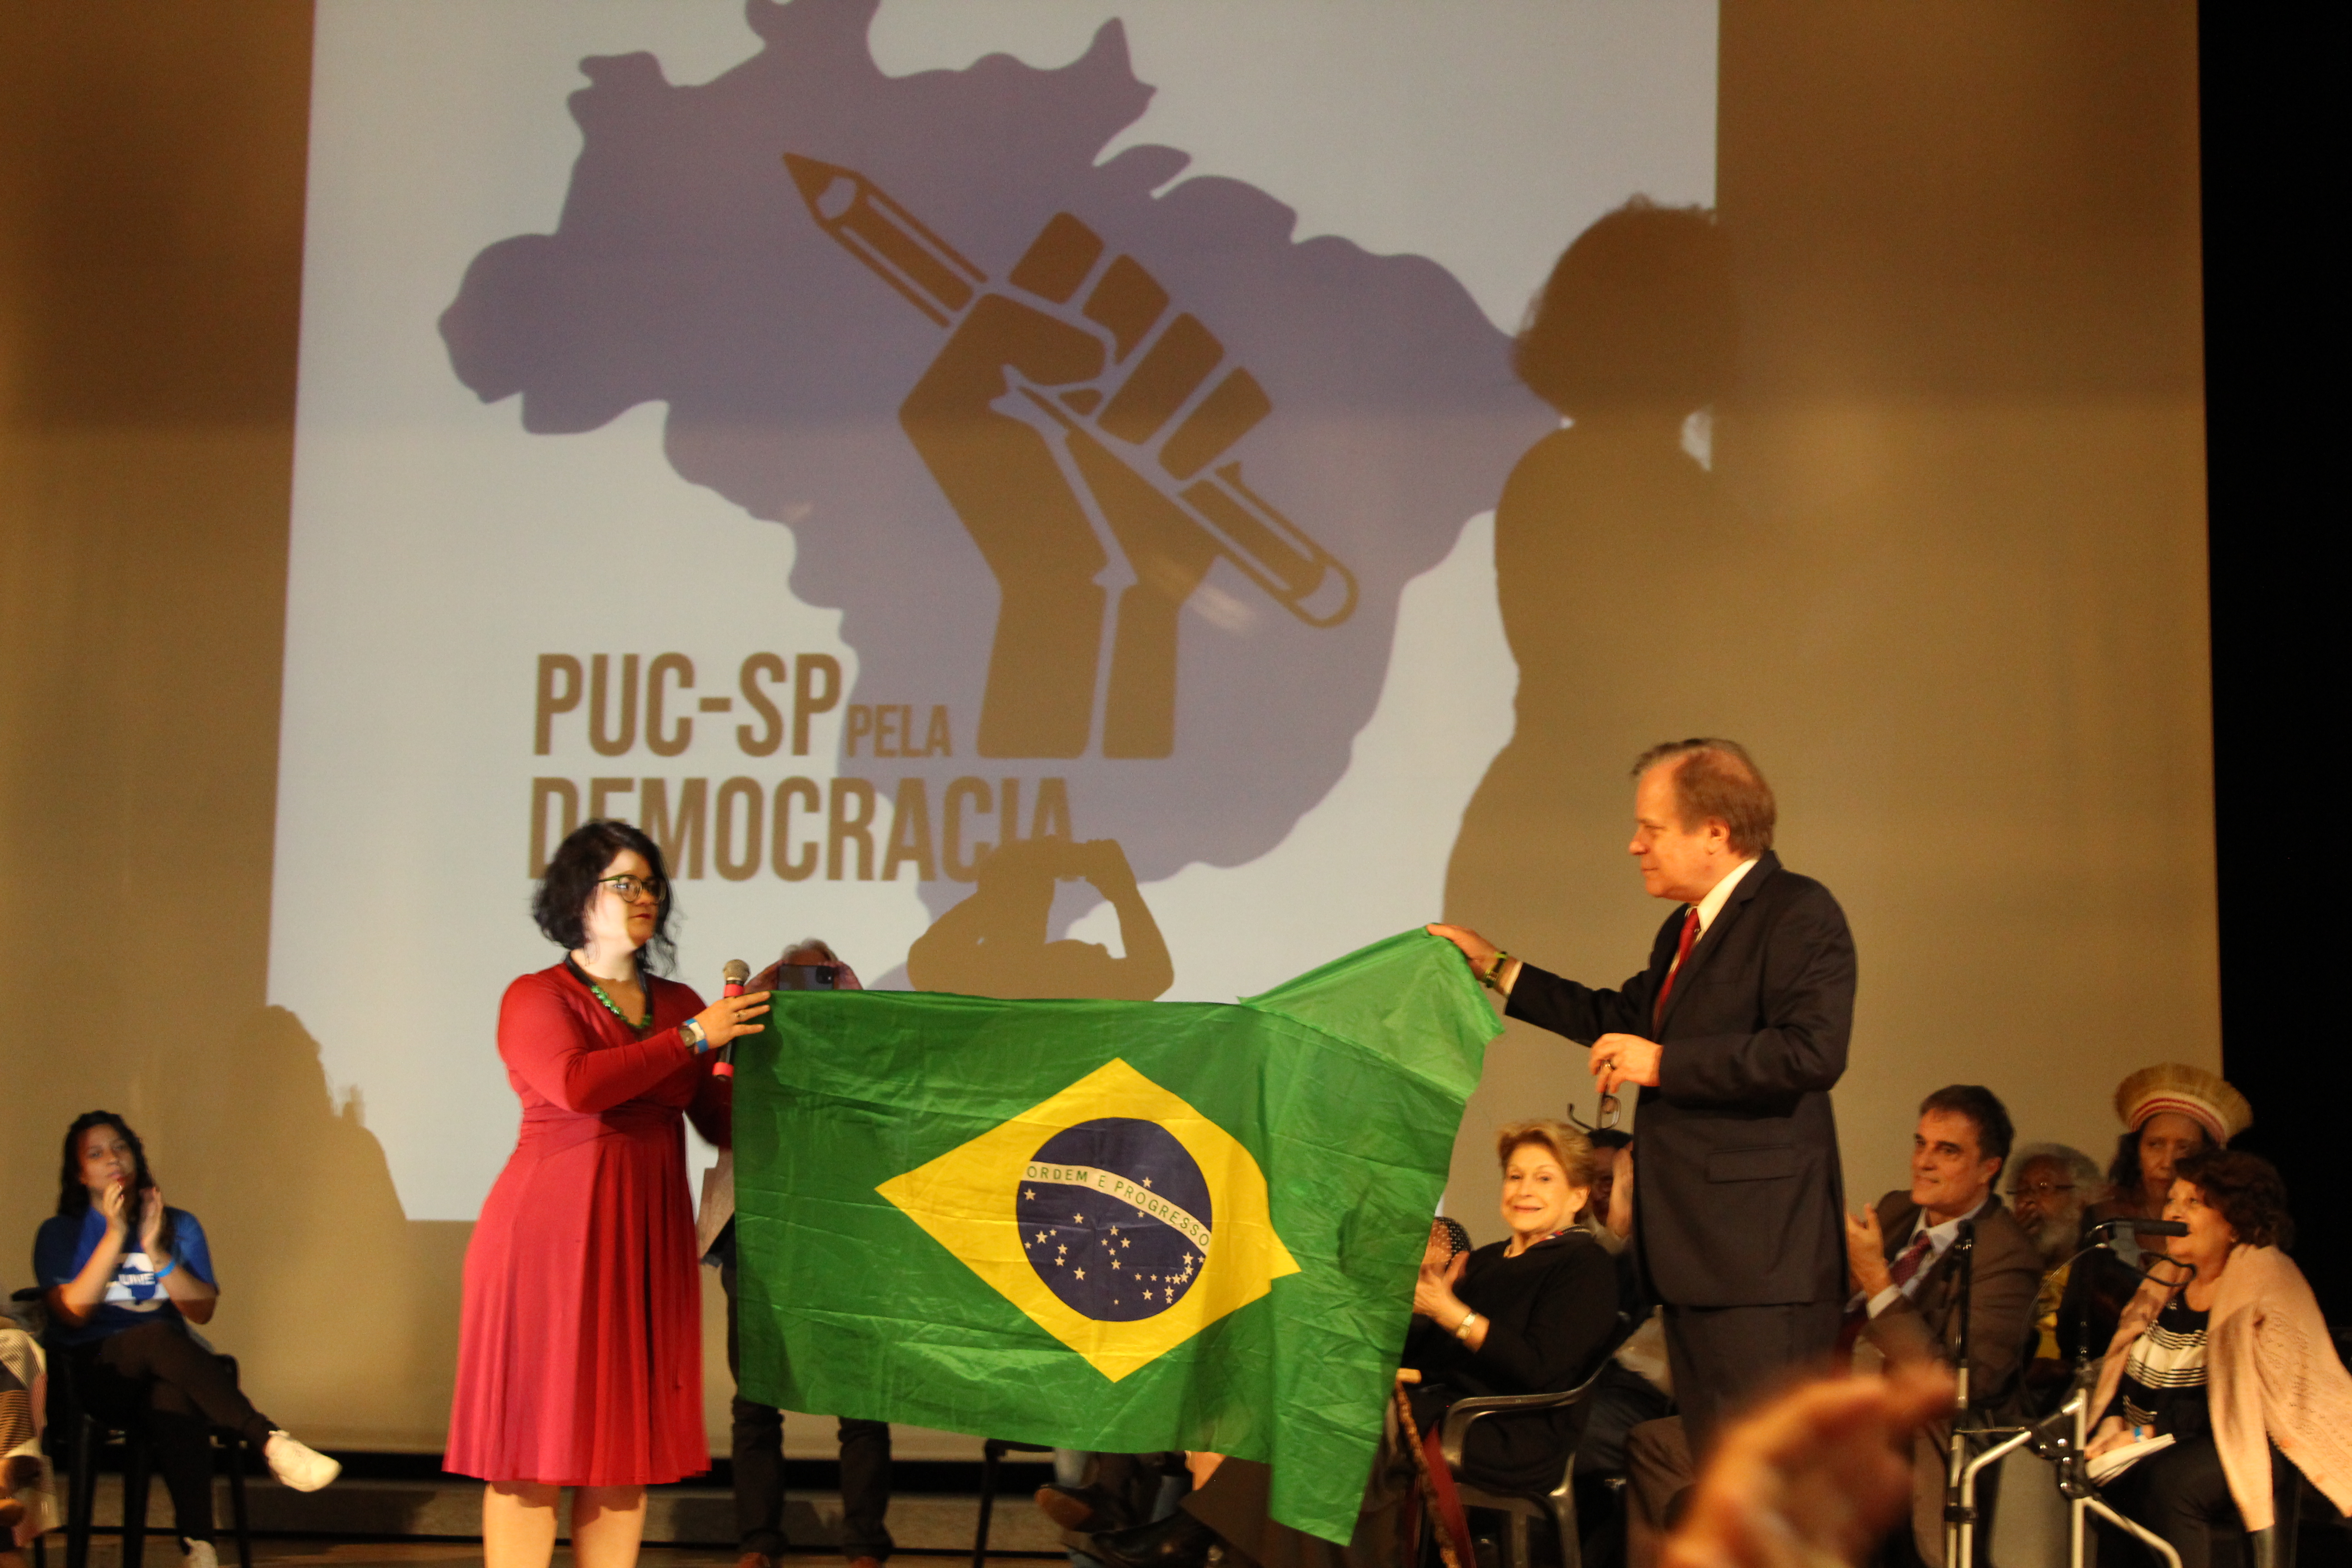 Cristiane Fairbanks, presidenta da APG (Associação dos Alunos de Pós-Graduação da PUC-SP), e o jornalista Chico Pinheiro seguravam bandeira do Brasil em ato em prol da democracia. Foto: Laura Mafra Boechat.